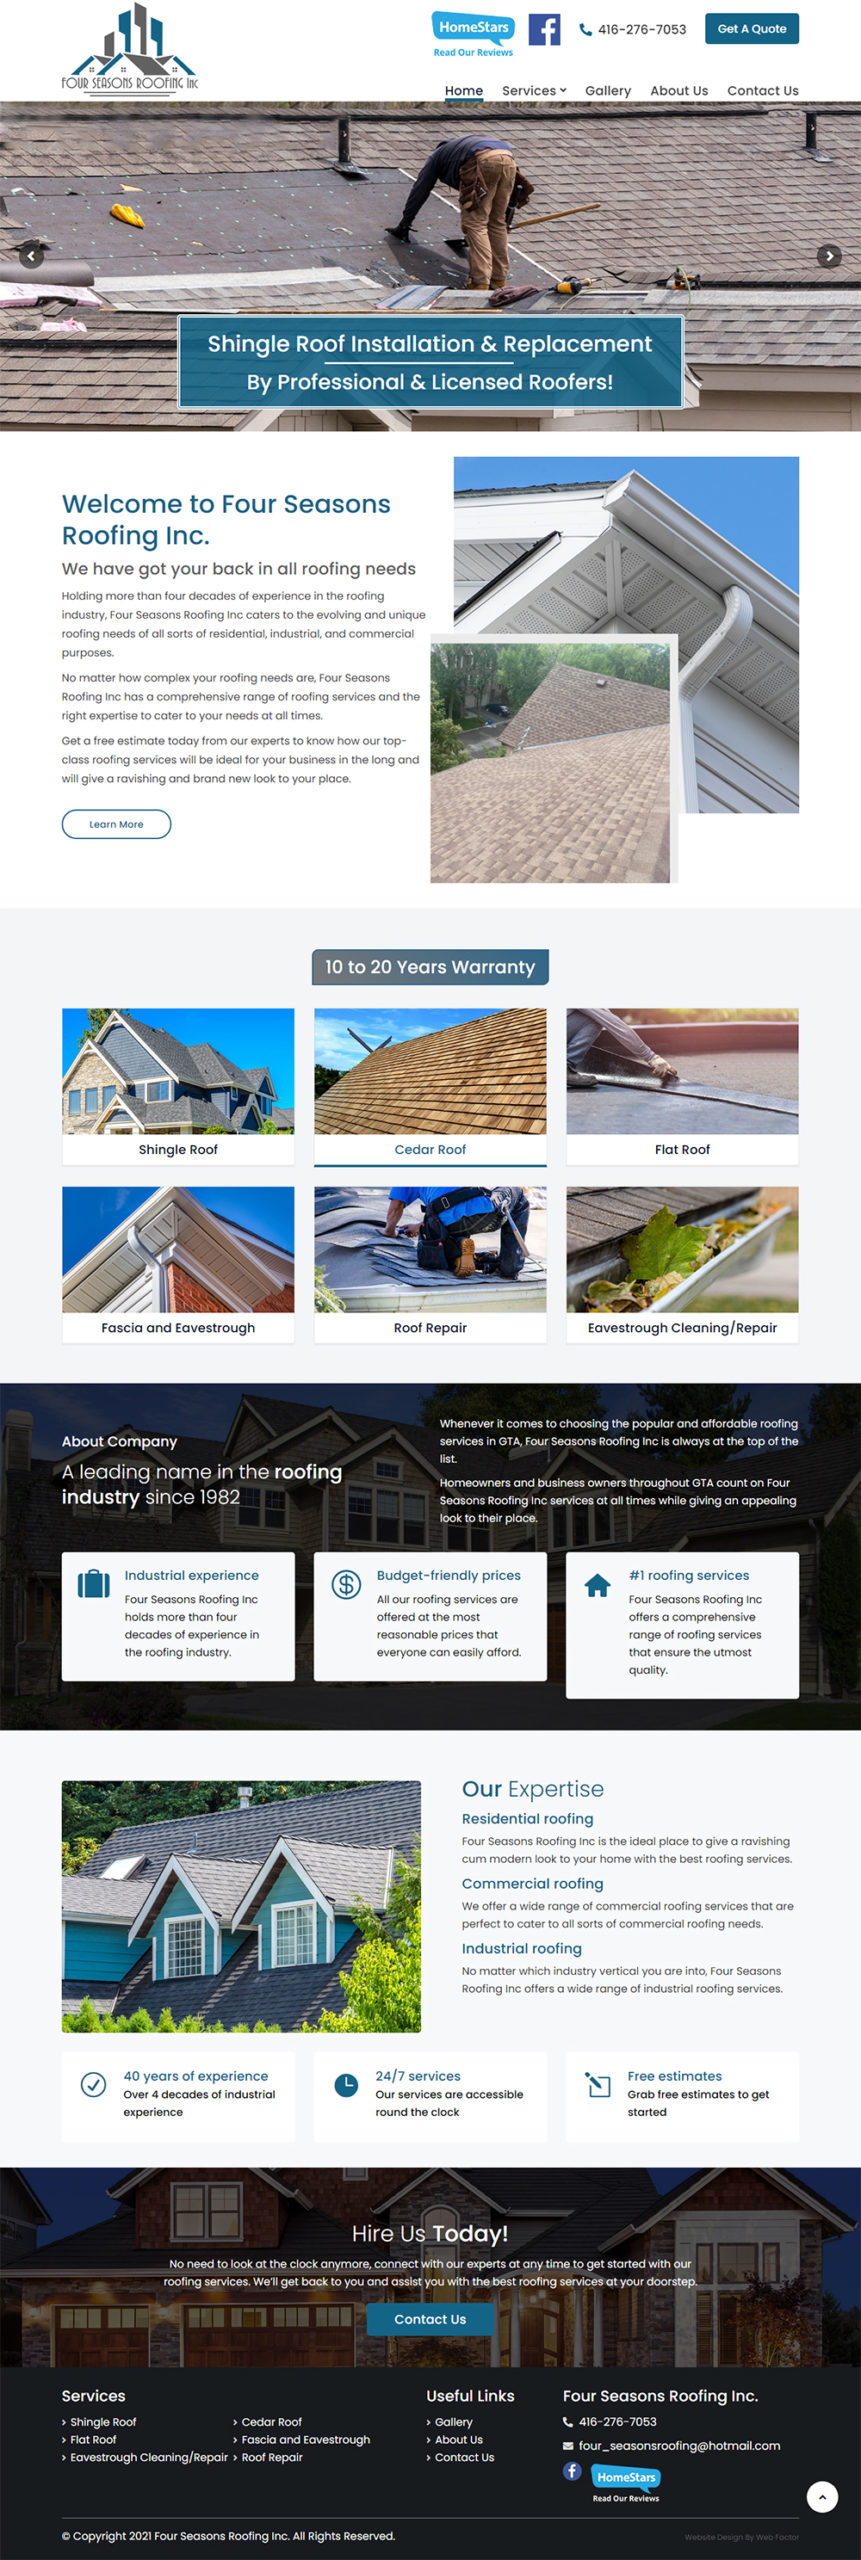 Website Devlopment Company Surrey